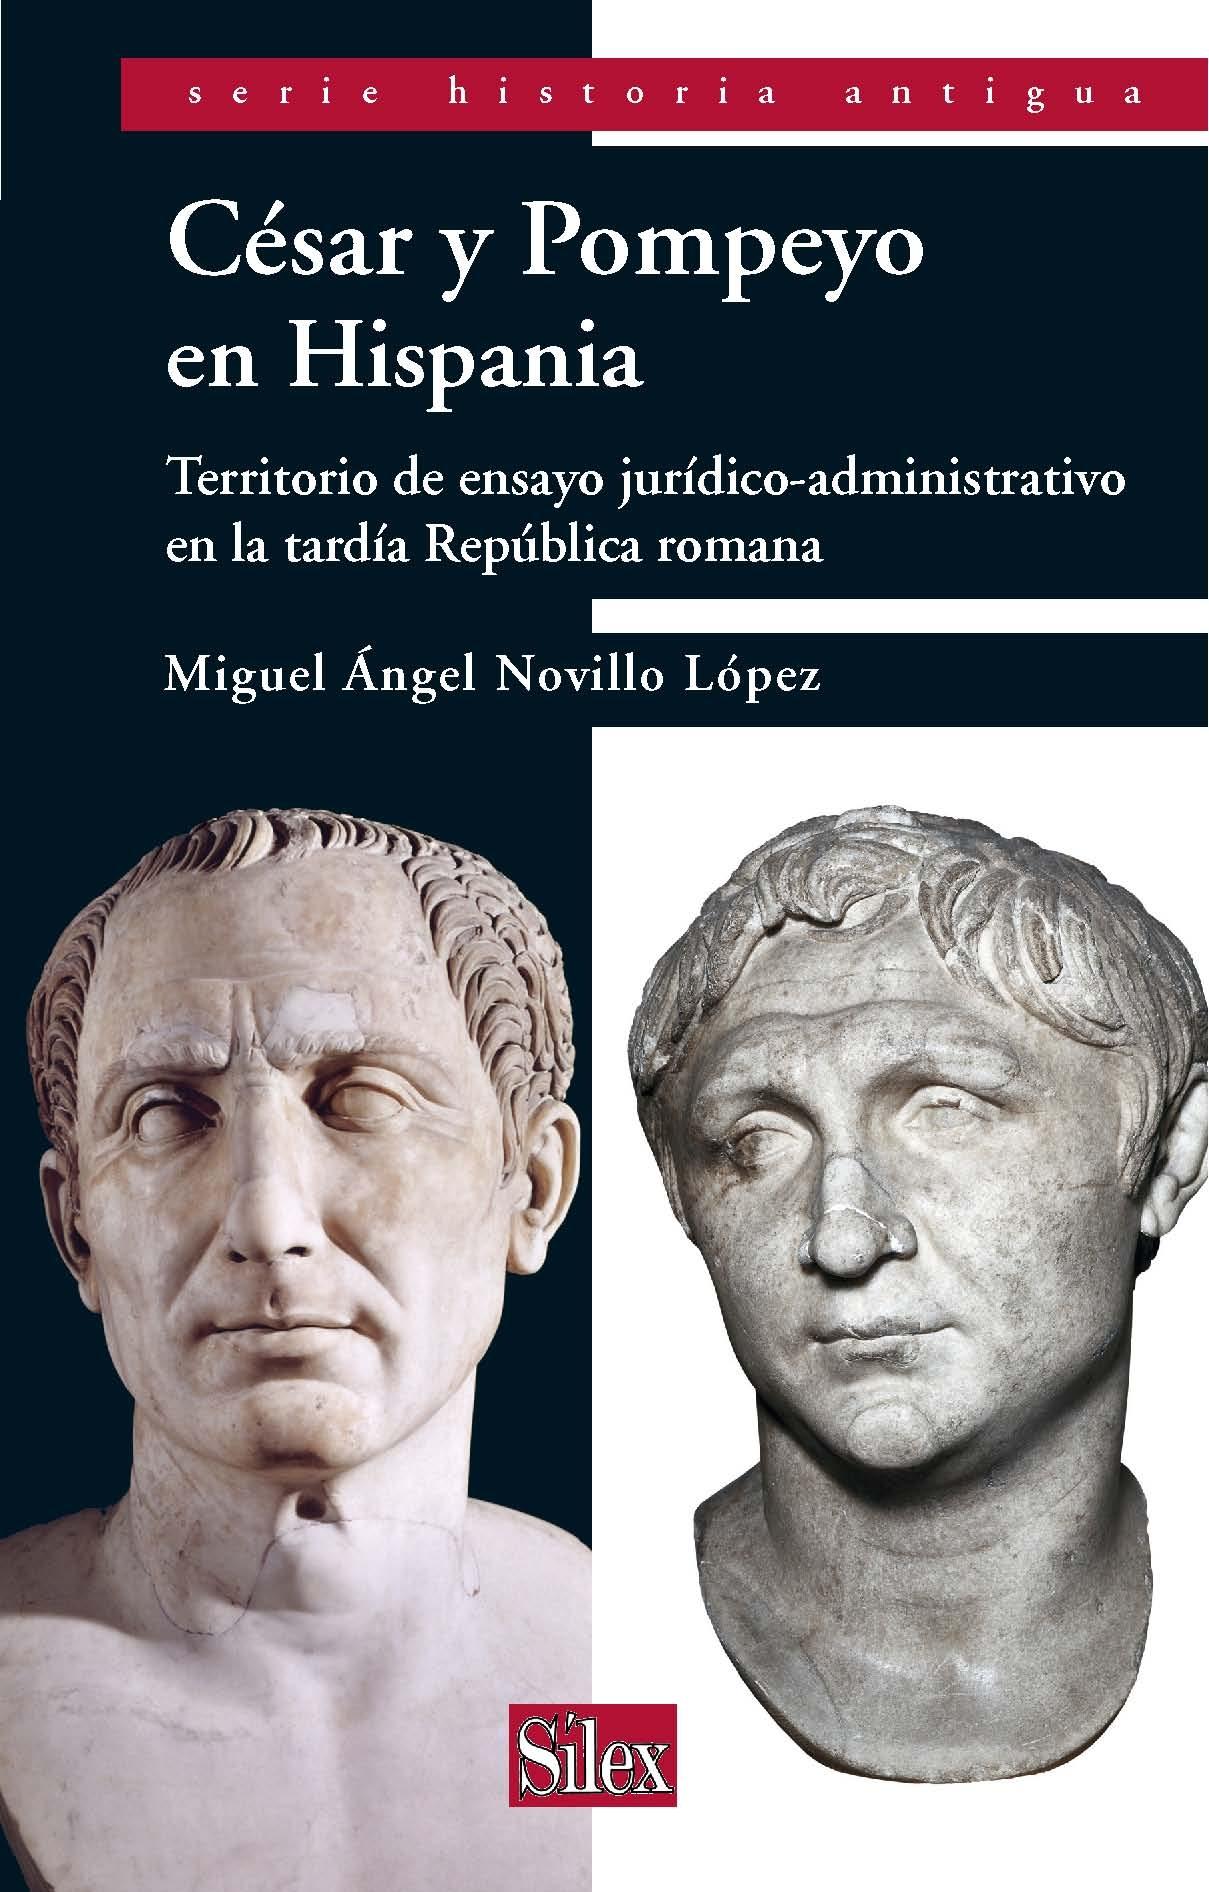 Cesar y Pompeyo en Hispania. Territorio de ensayo Jurídico-administrativo en la tardía república romana